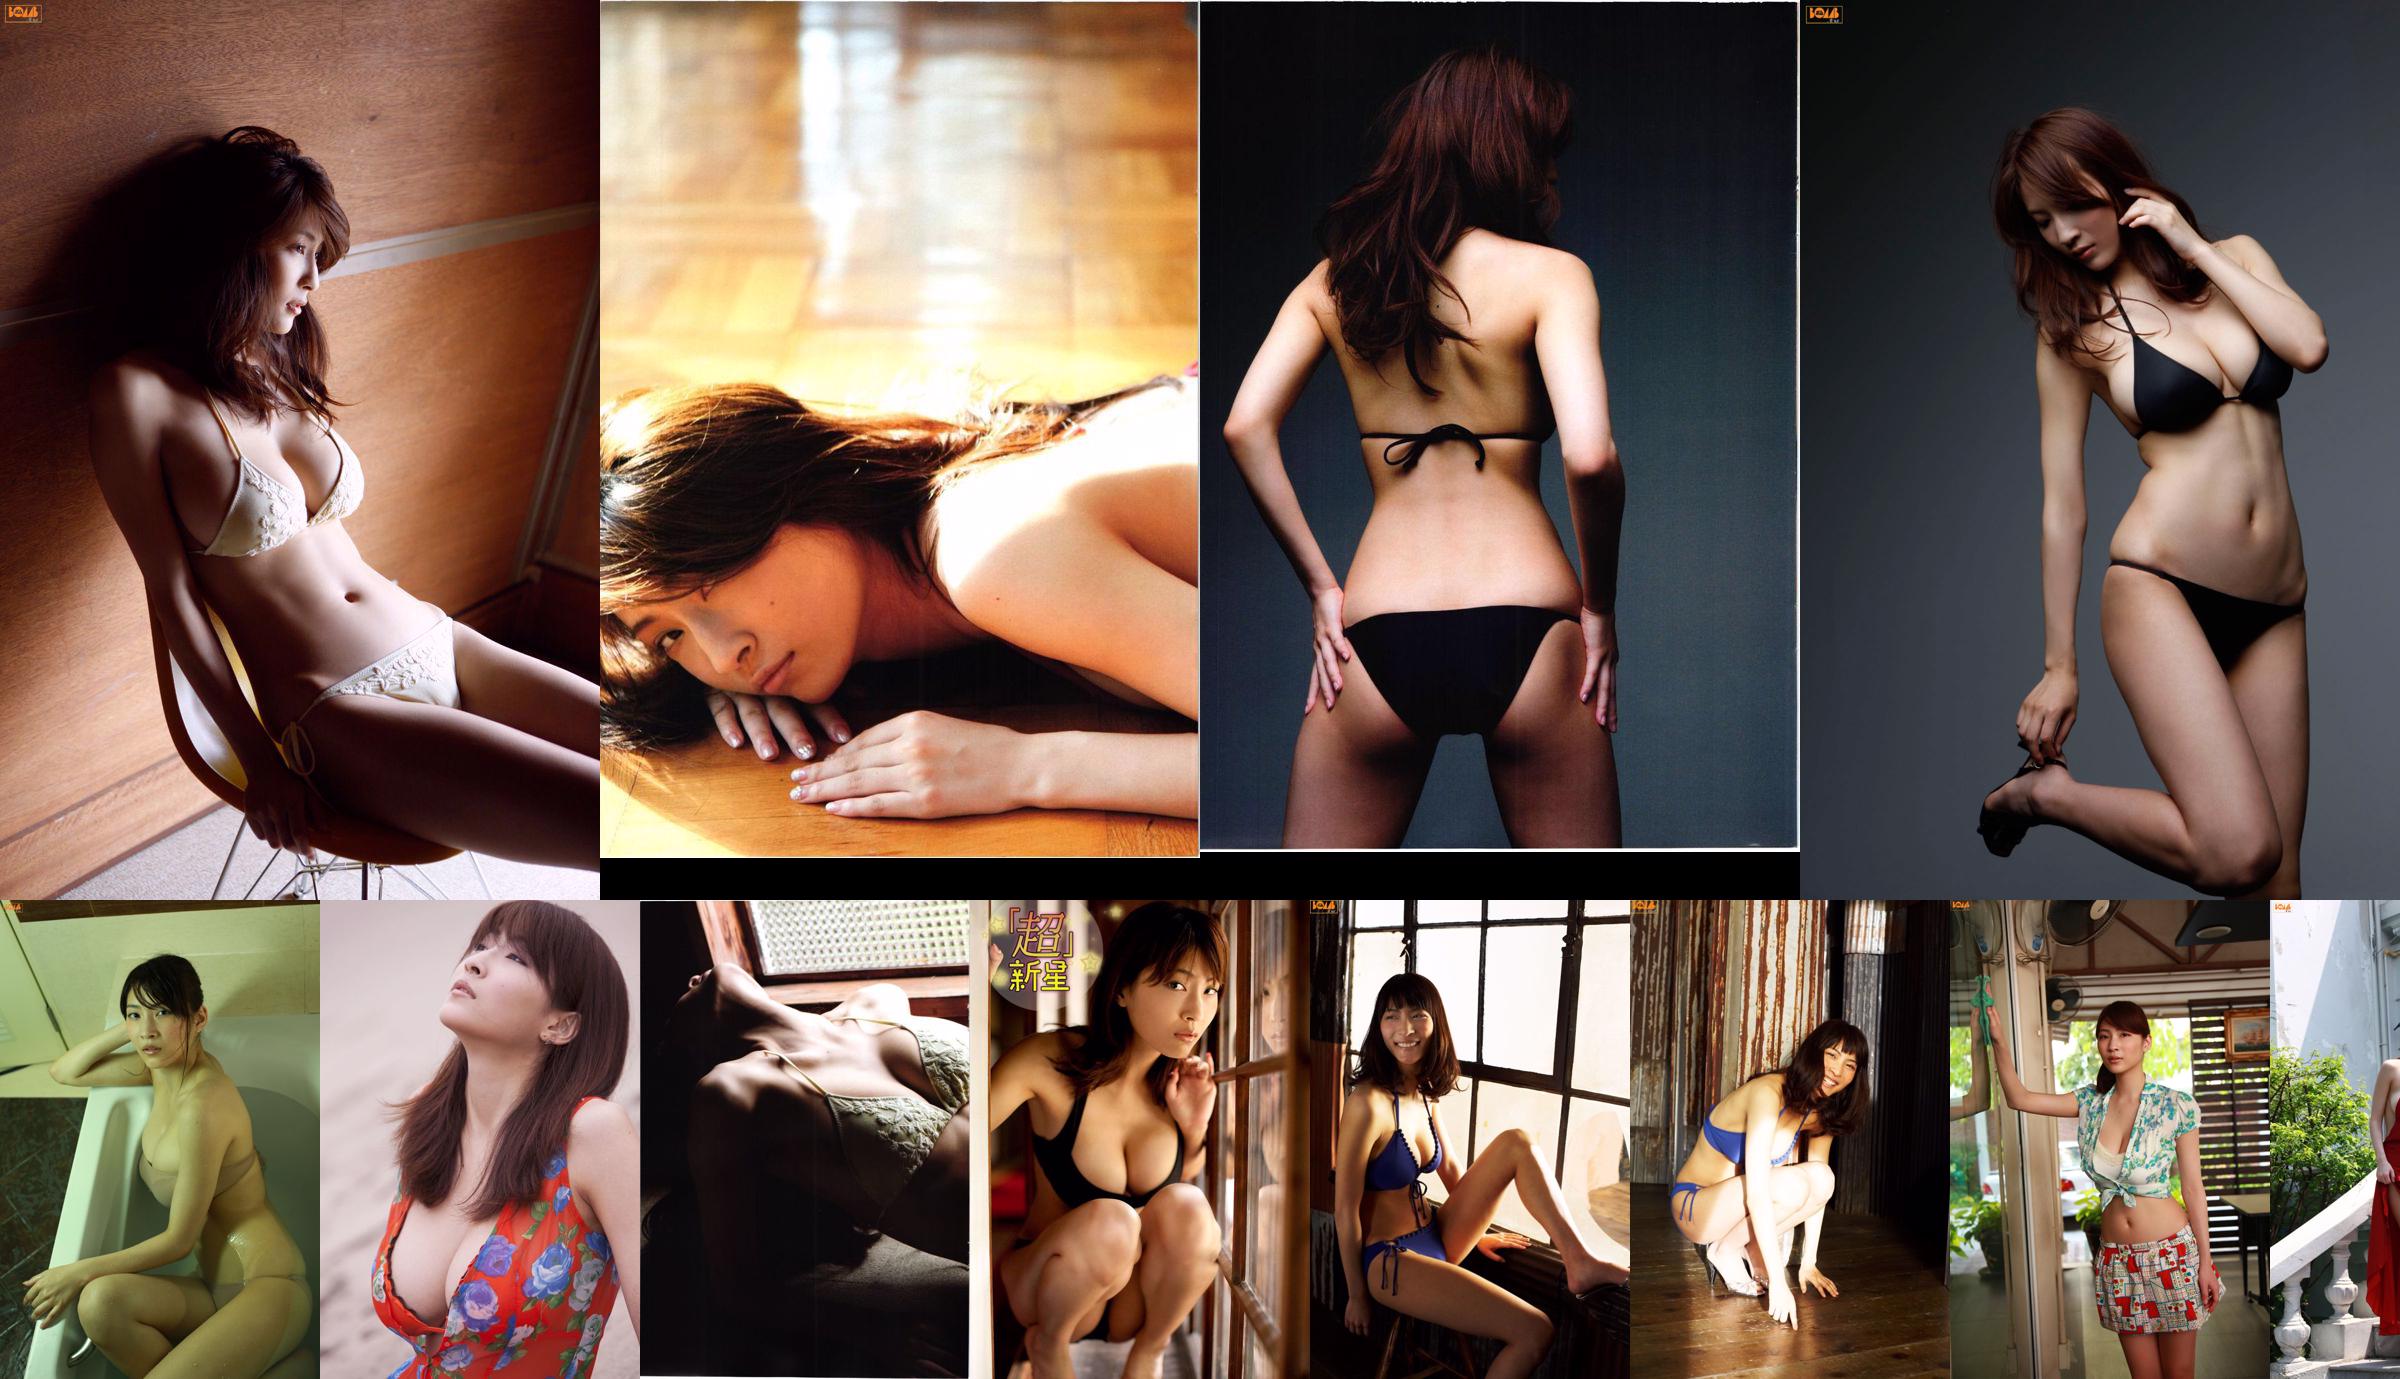 [Bomb.TV] Edição de maio de 2010 Mamoru Asana Asana Mamoru / Mana Kono No.f4e53f Página 1